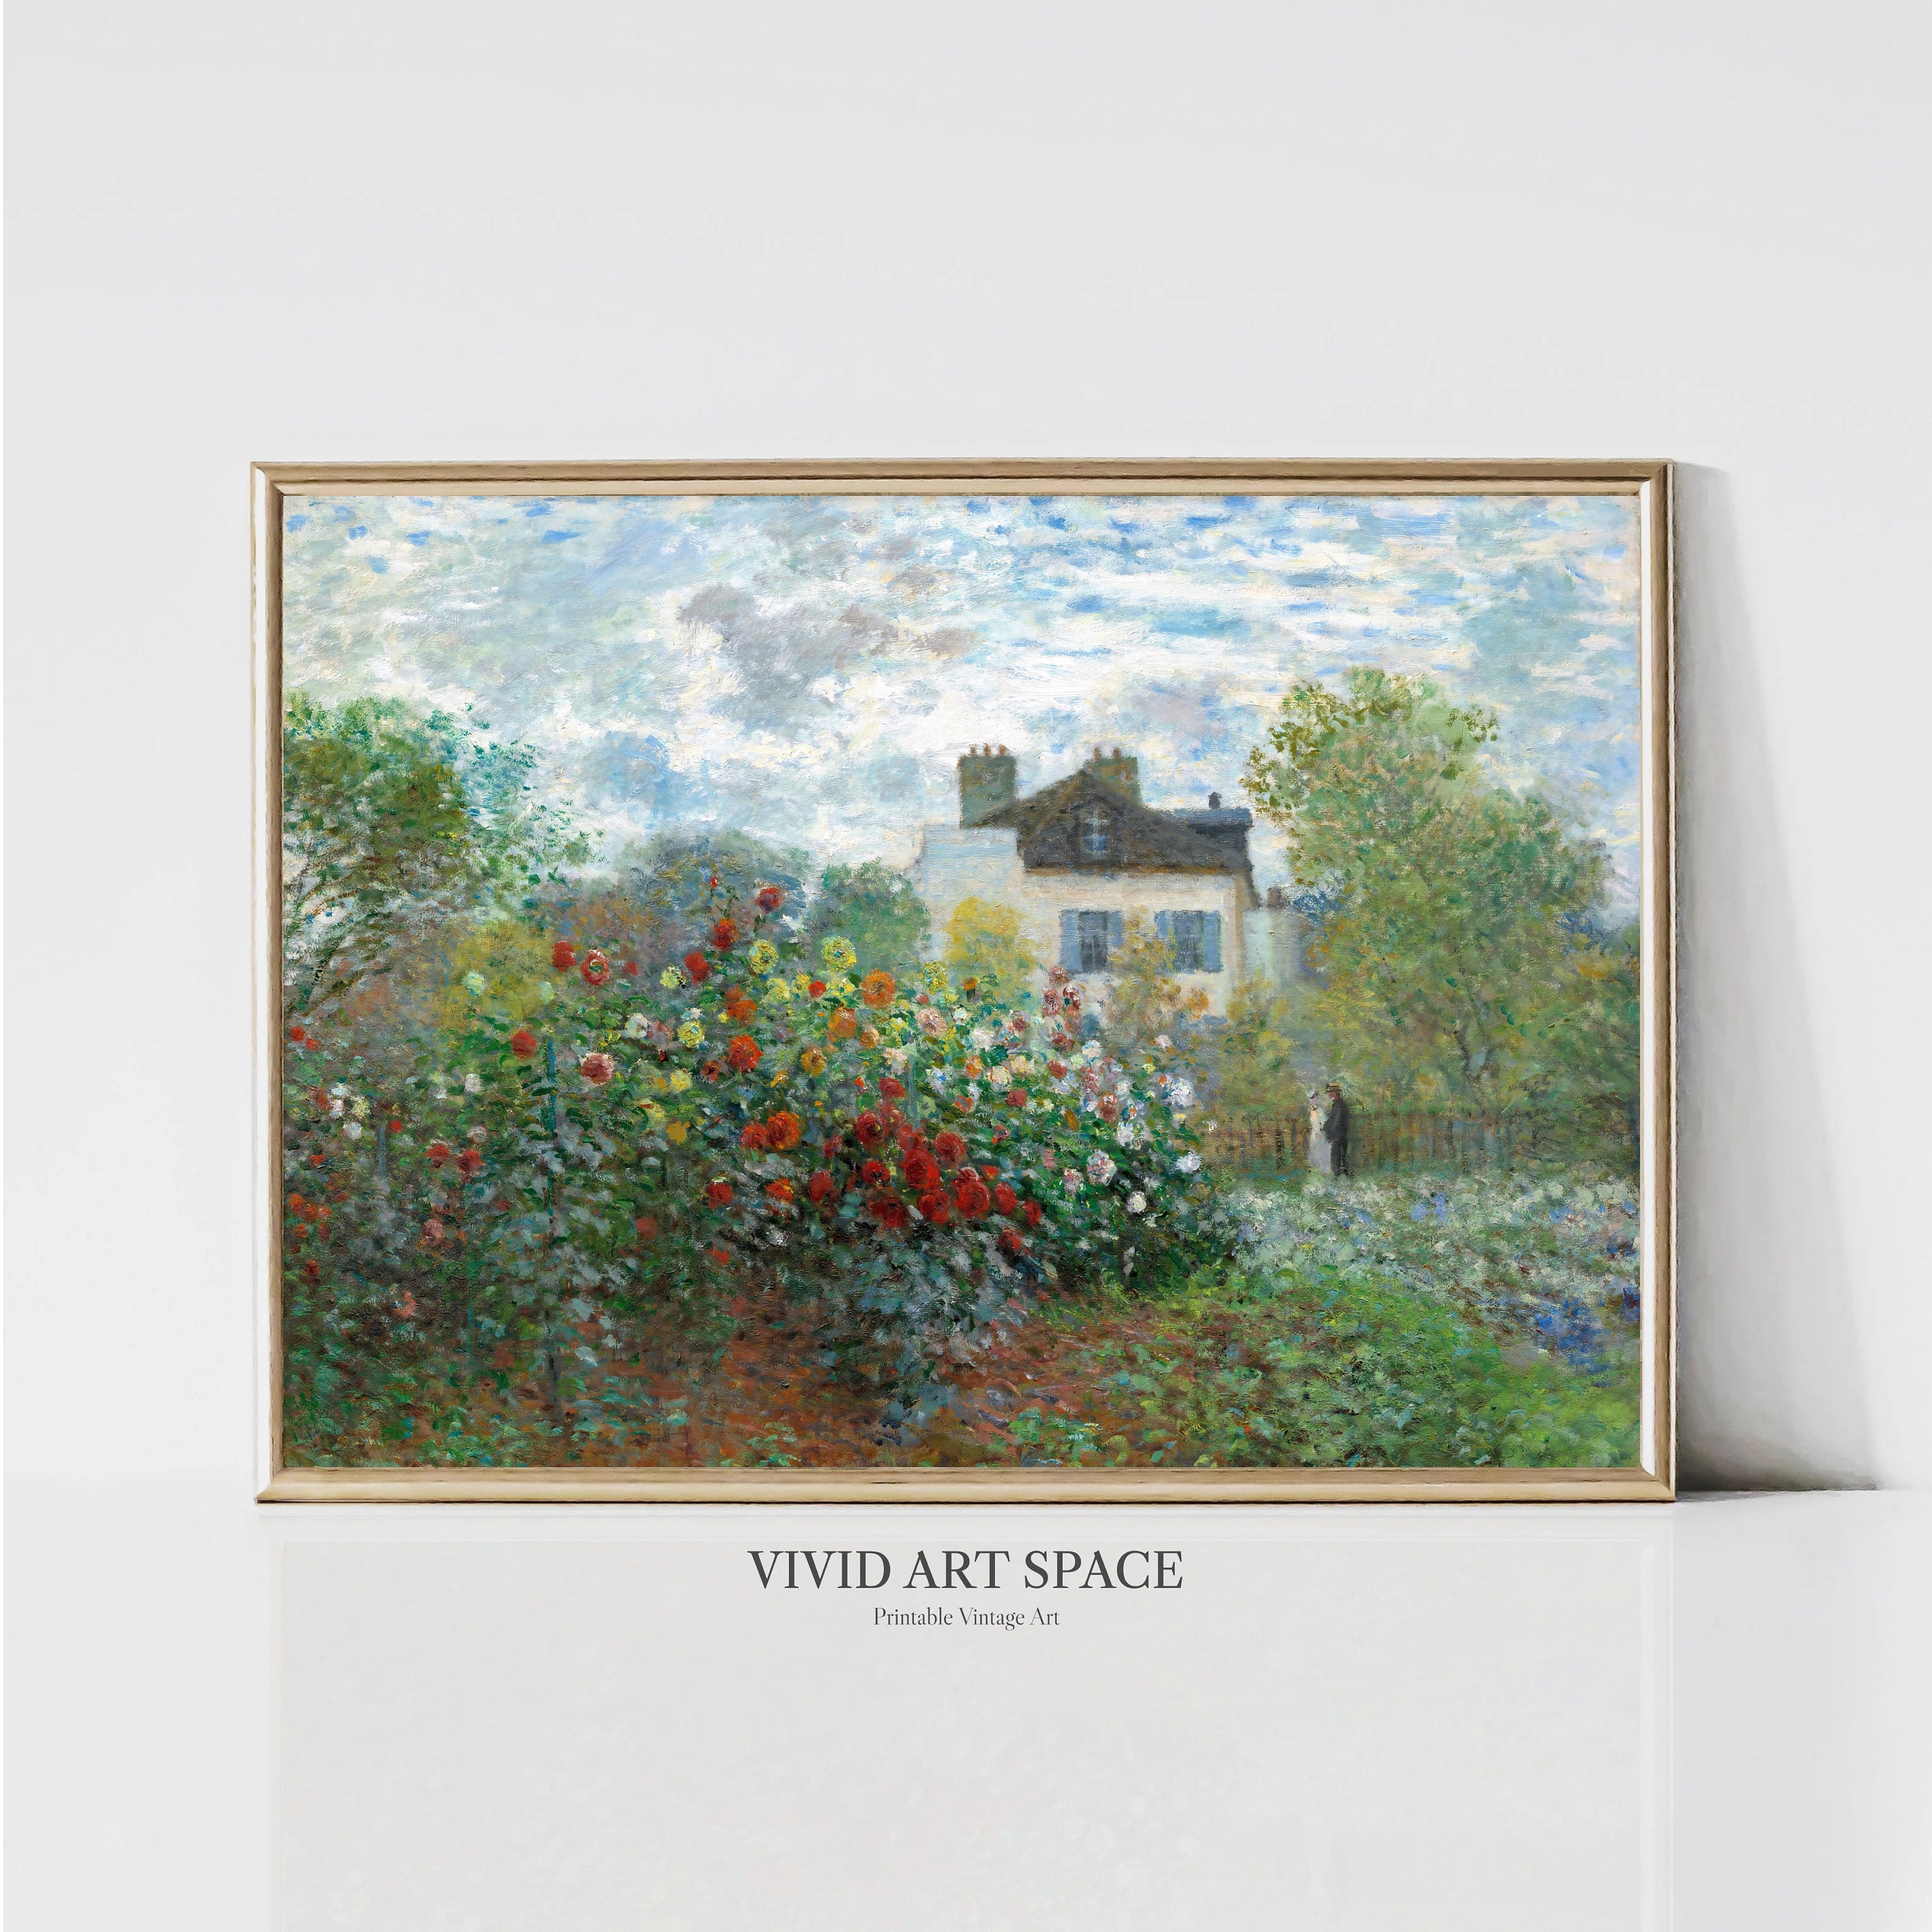 30 M-9, Handbag - Claude Monet, The Artist's Garden at Giverny